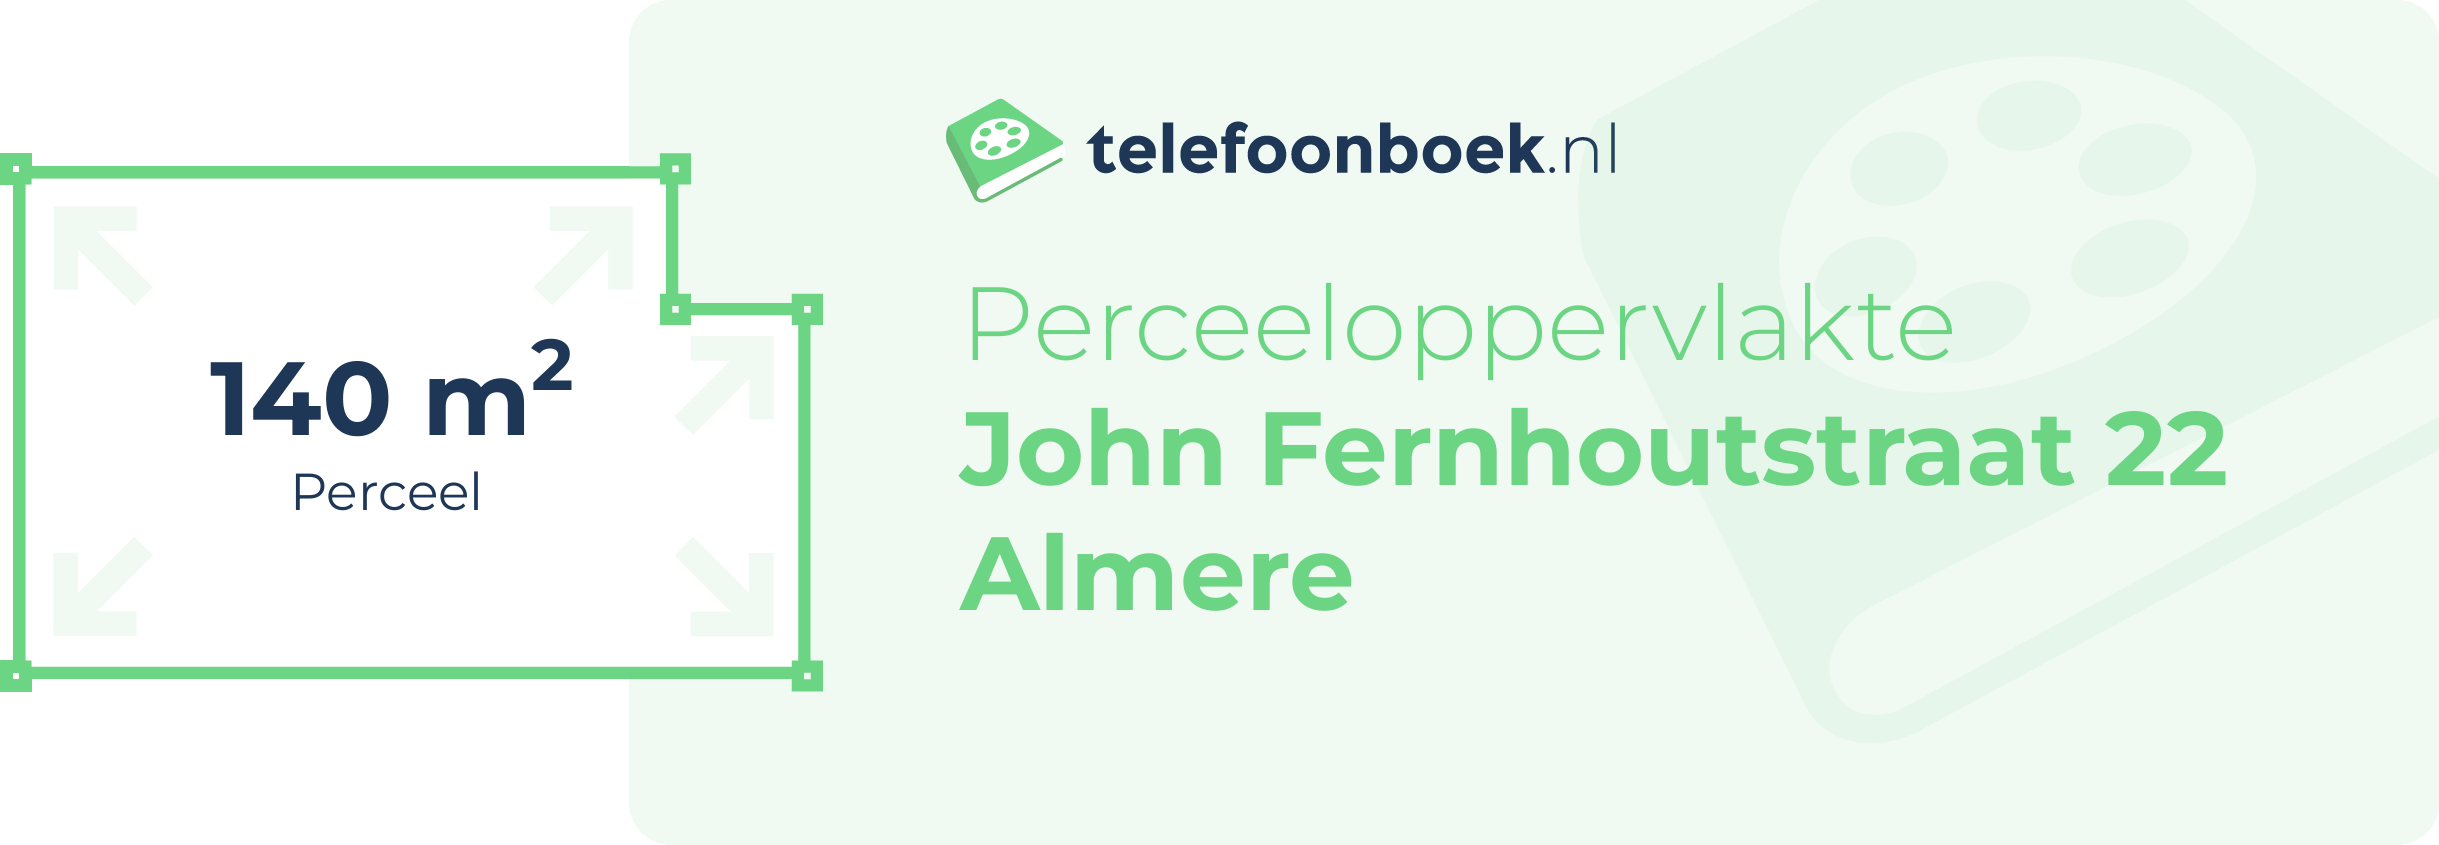 Perceeloppervlakte John Fernhoutstraat 22 Almere